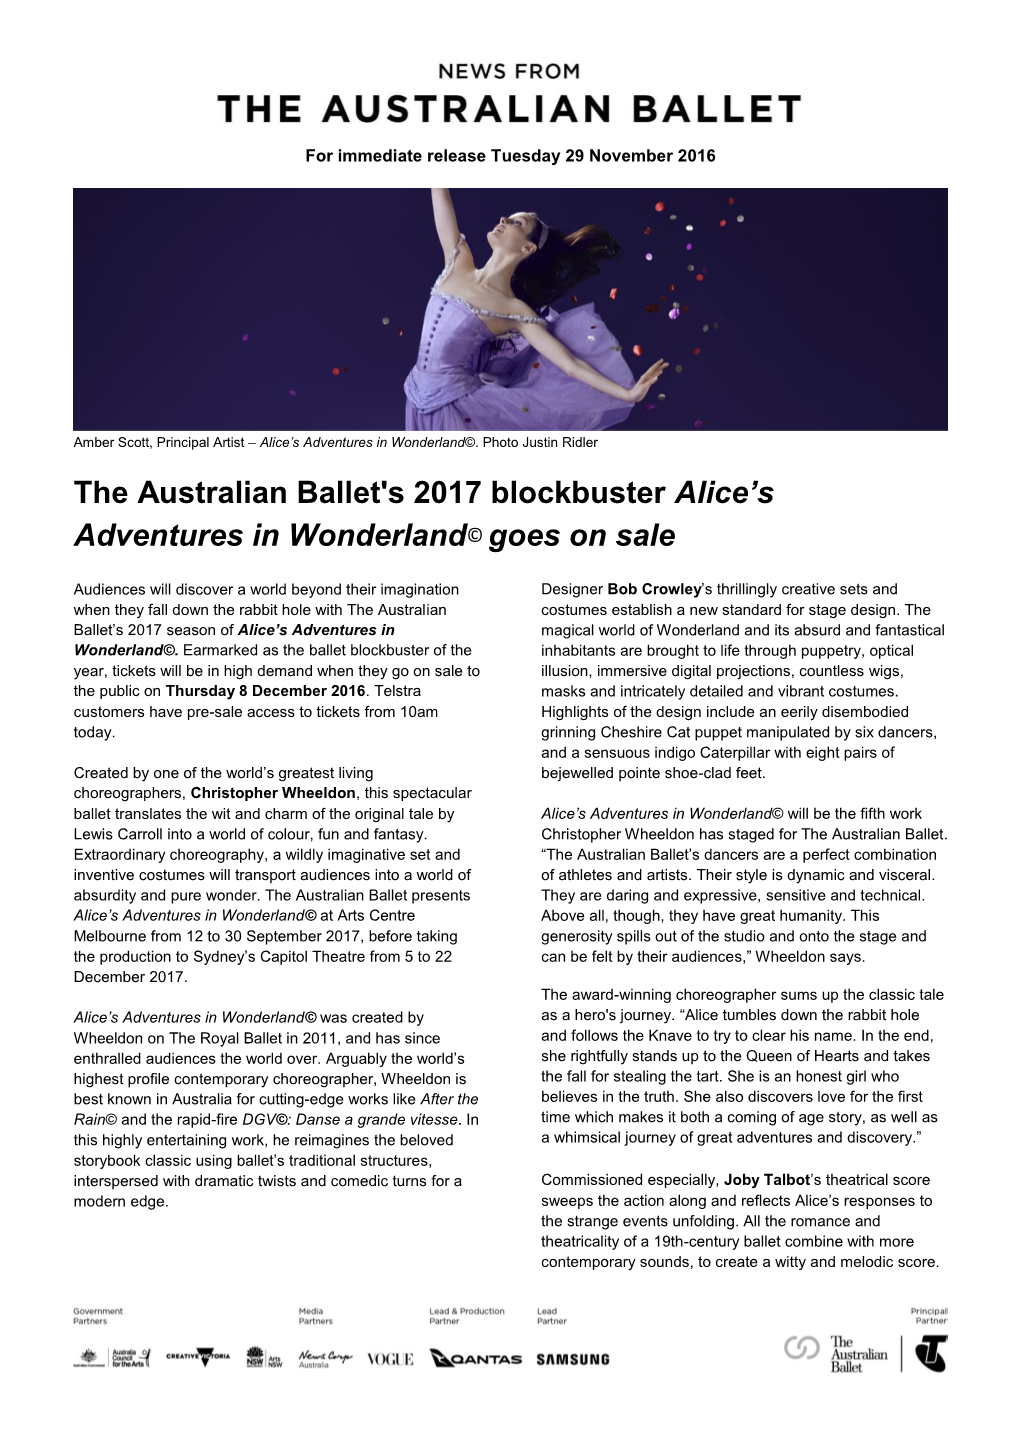 The Australian Ballet's 2017 Blockbuster Alice's Adventures In